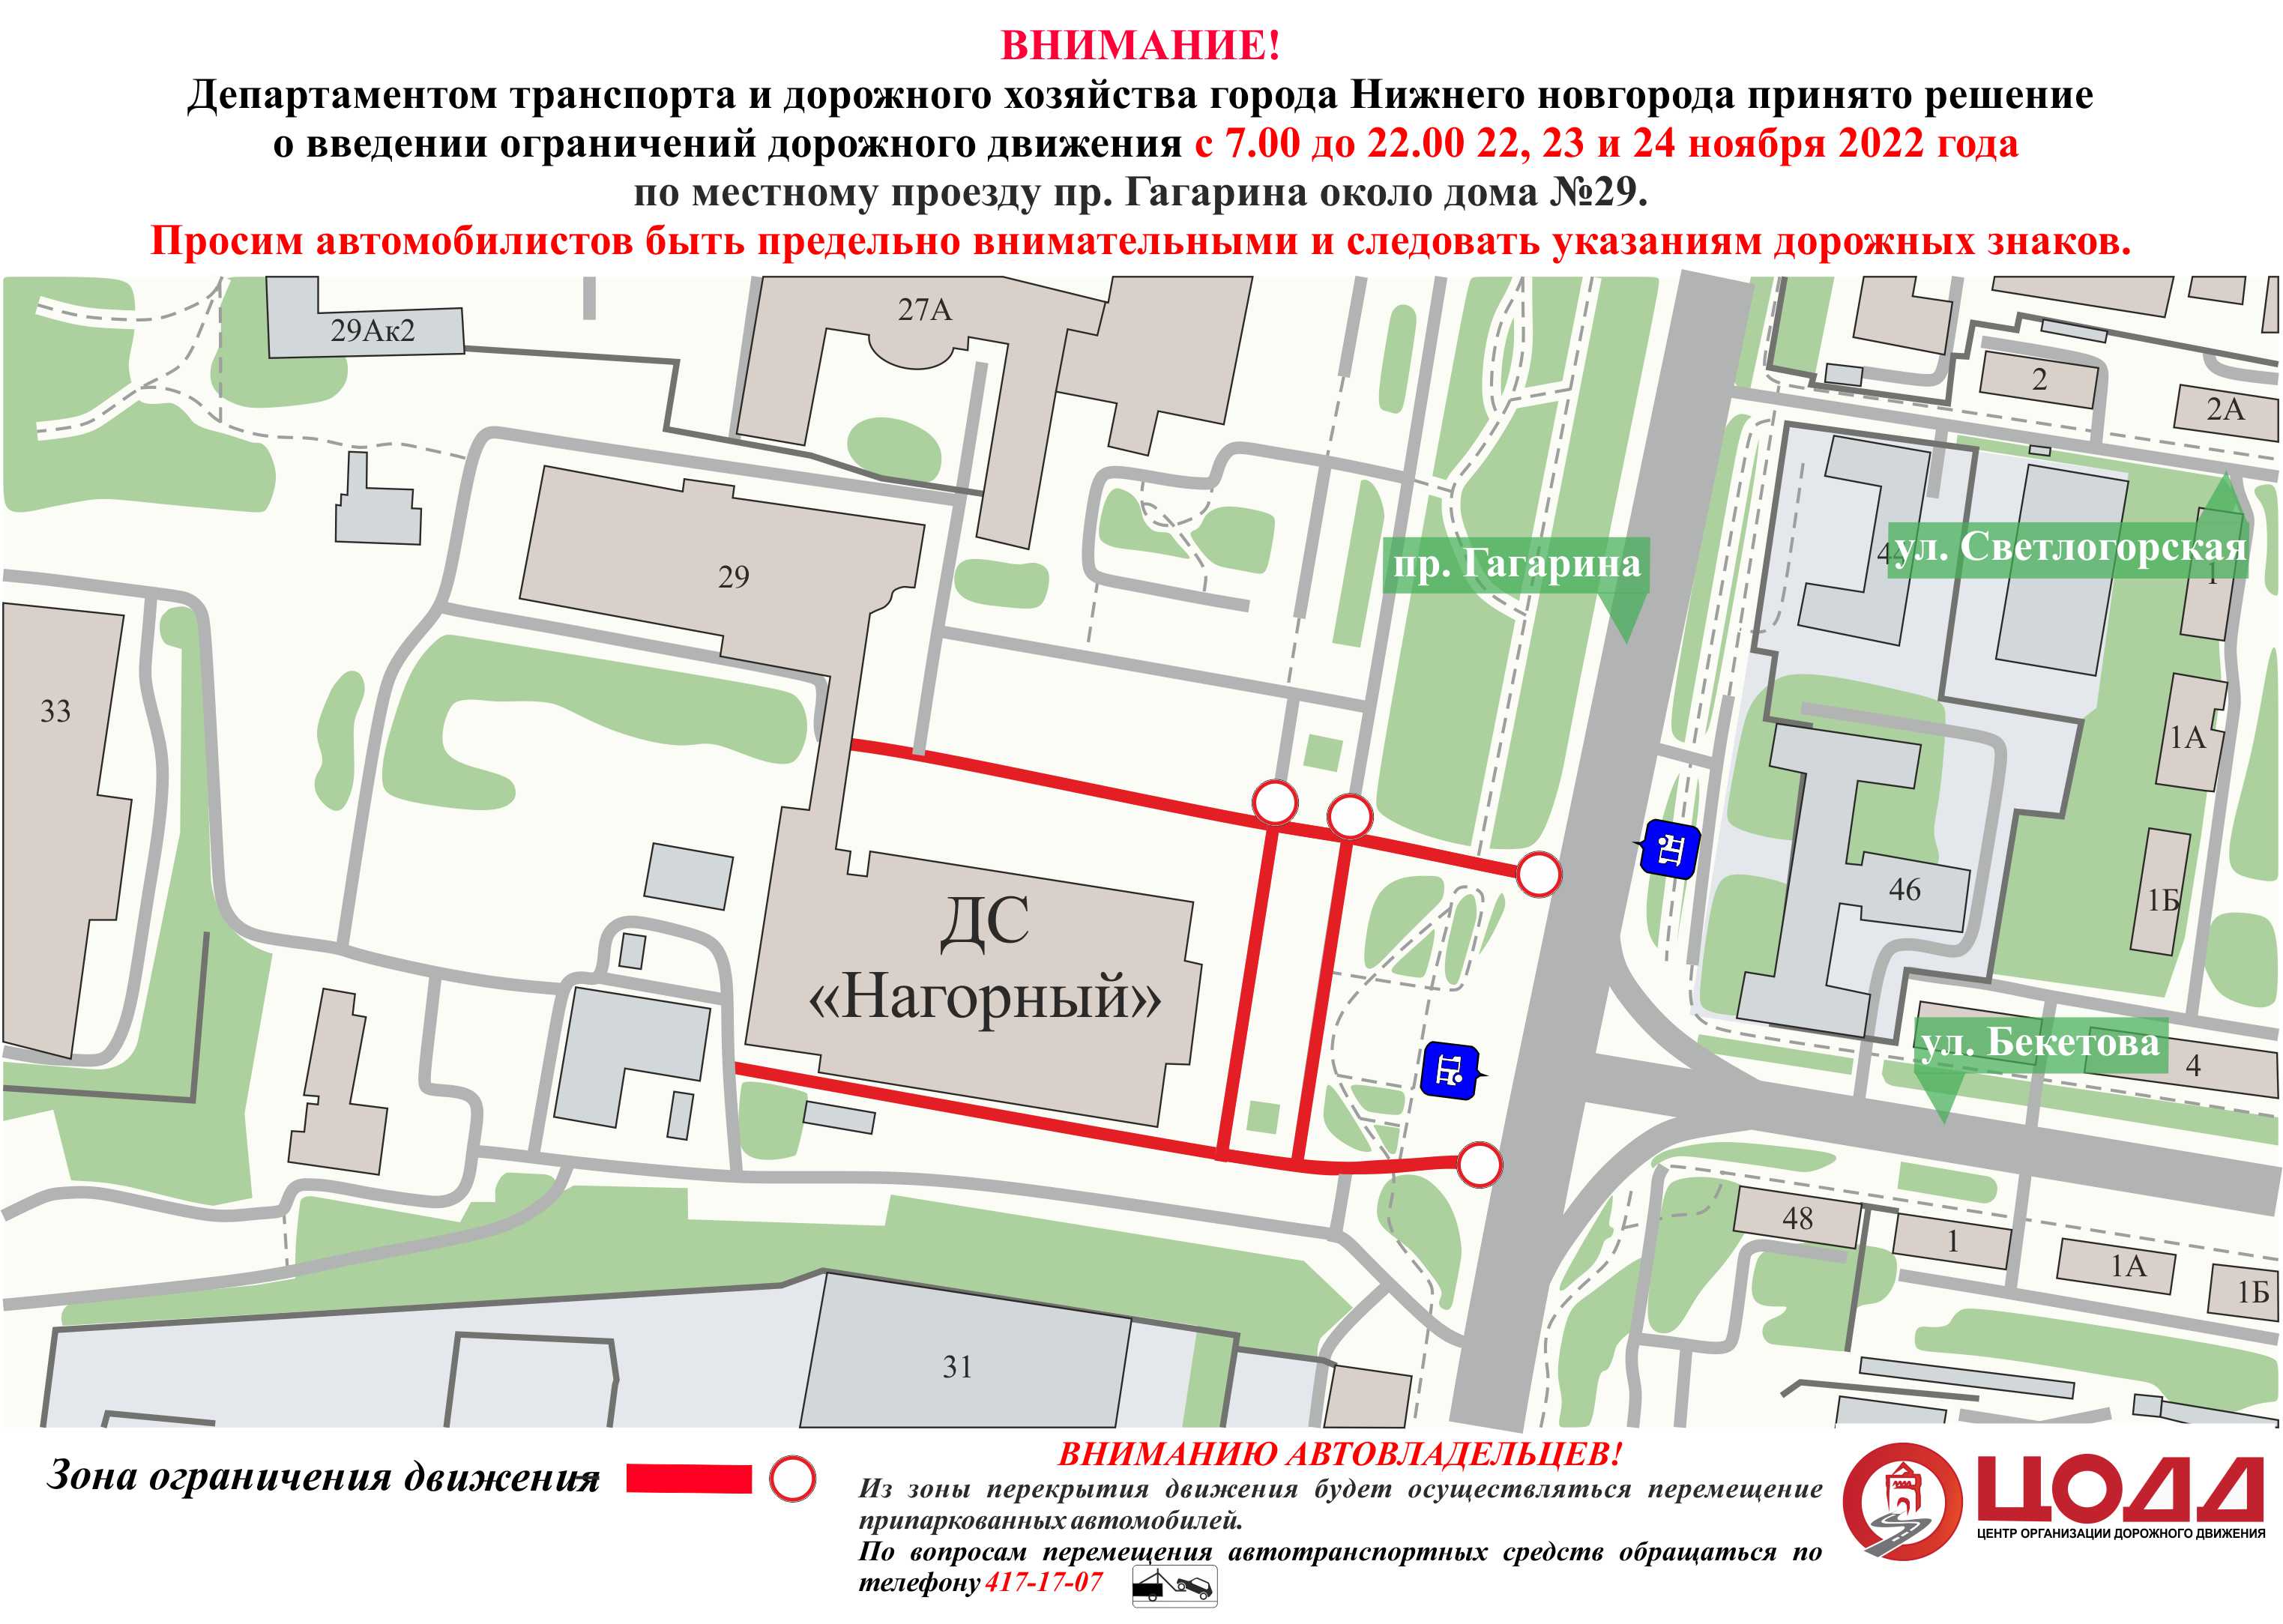 Движение будет ограничено возле Нагорного Дворца спорта в Нижнем Новгороде с 22 ноября - фото 1